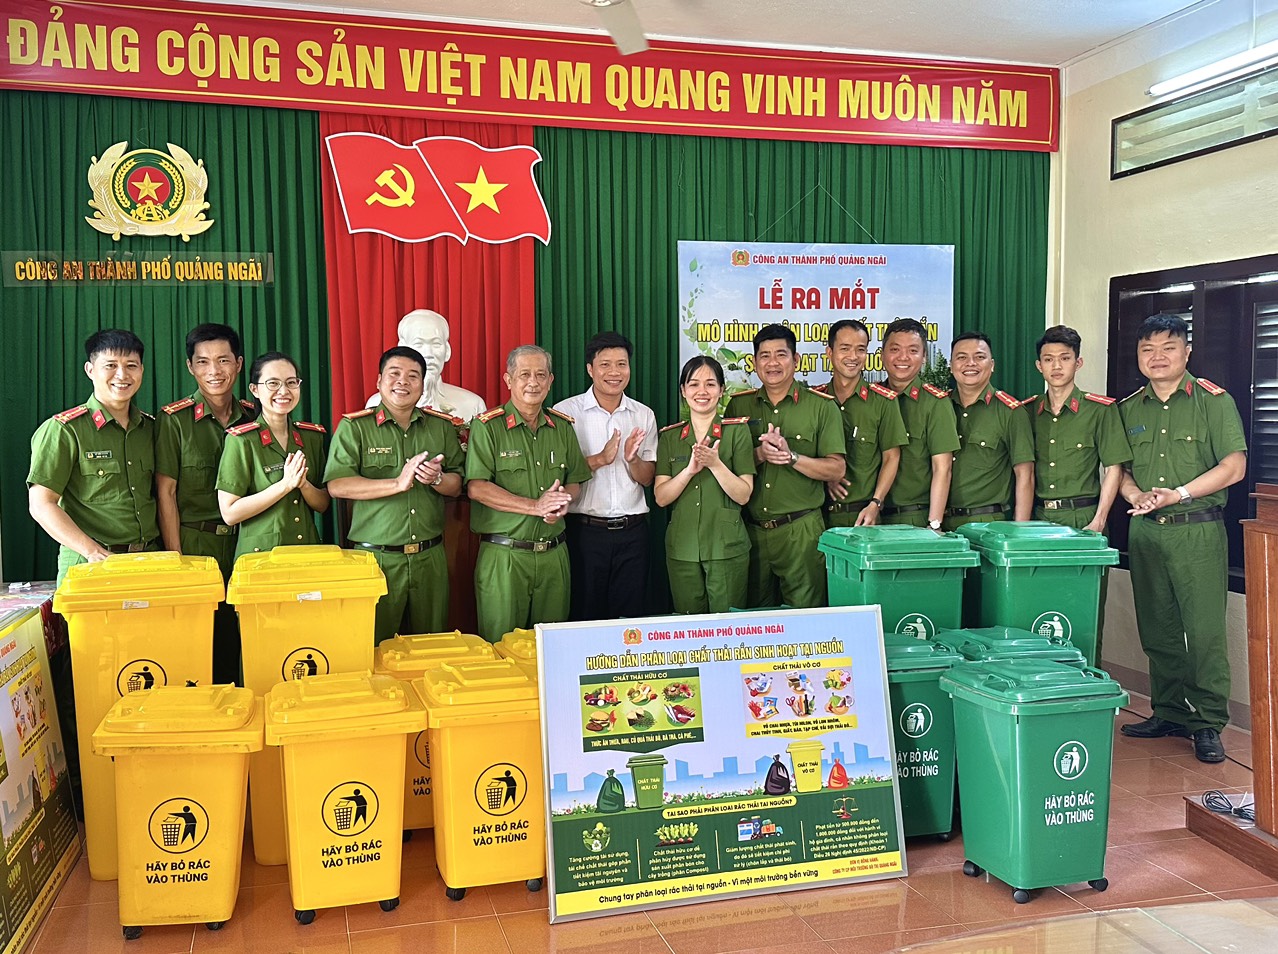 Công an thành phố Quảng Ngãi vừa tổ chức lễ ra mắt mô hình “Phân loại chất thải rắn sinh hoạt tại nguồn”